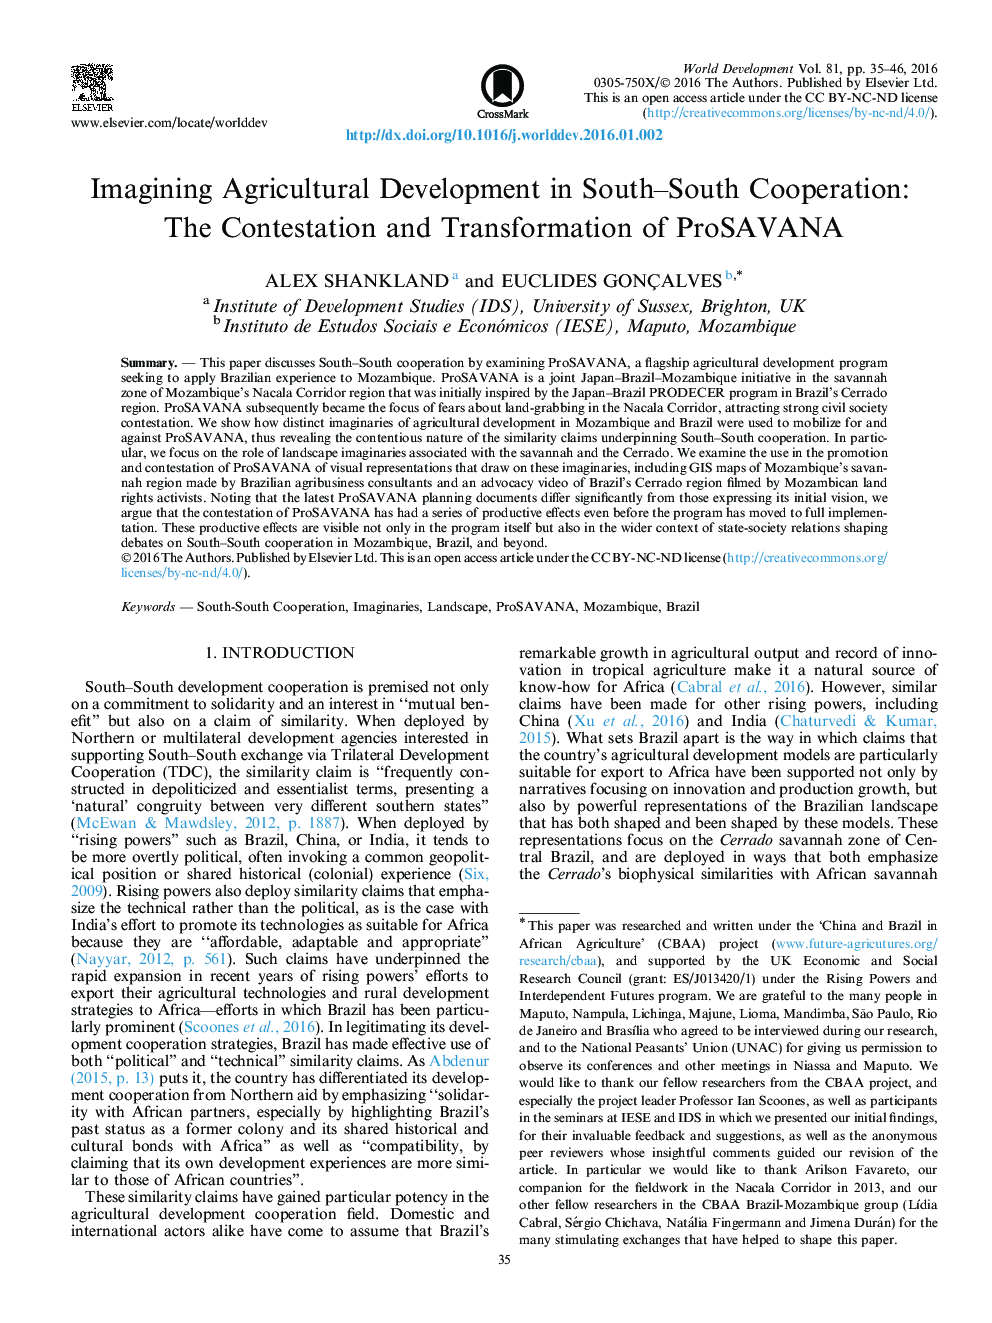 تصویرسازی توسعه کشاورزی در همکاری های جنوب ـ جنوب : اعتراض و انتقال ProSAVANA